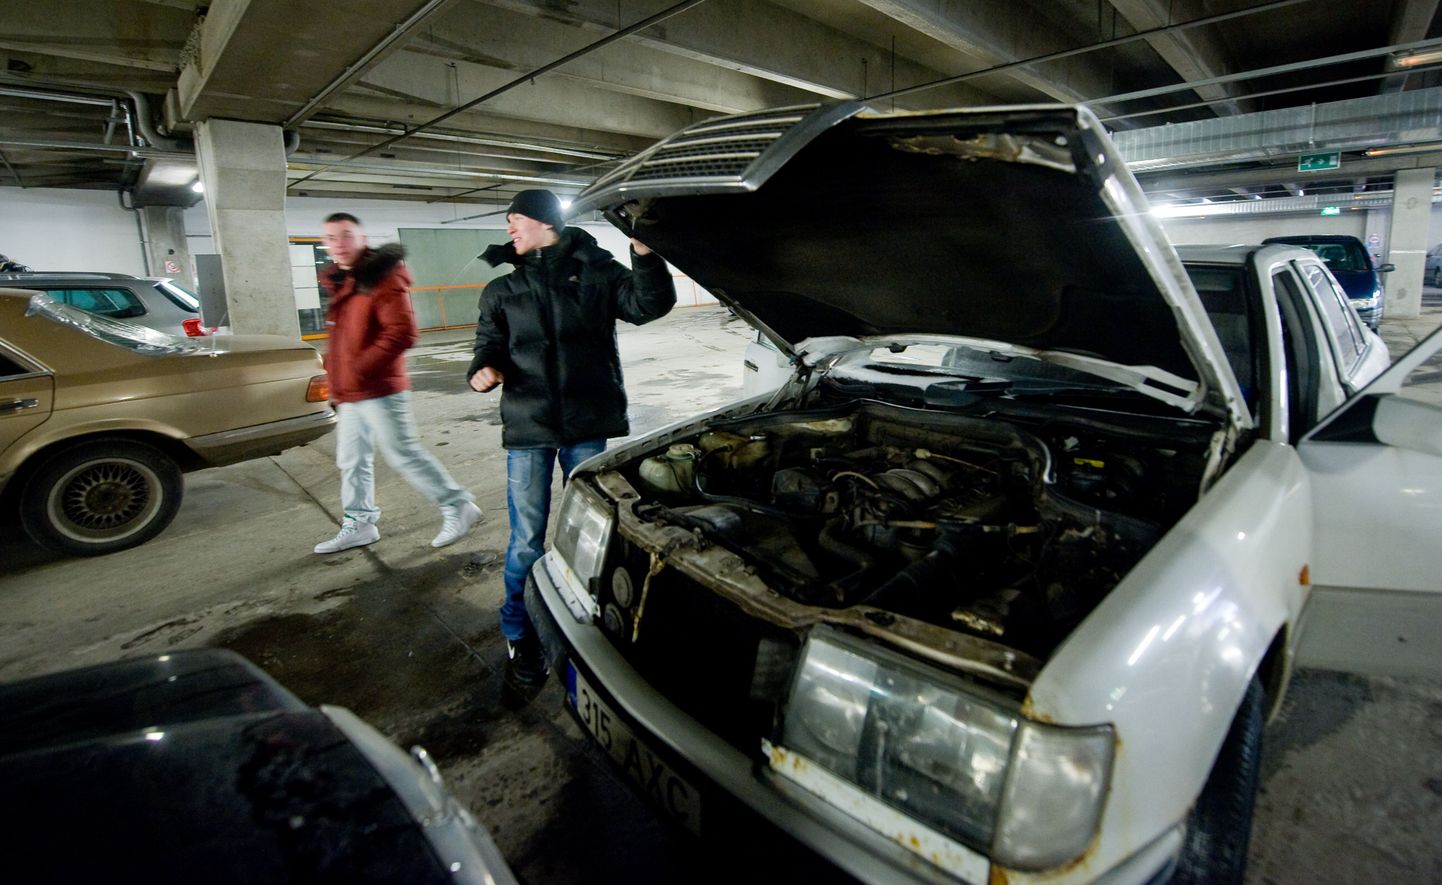 Mustamäelane Sergei Žakin tõi oma Mercedese sõiduauto sõbra abiga maa-alusesse parklasse soojenema.